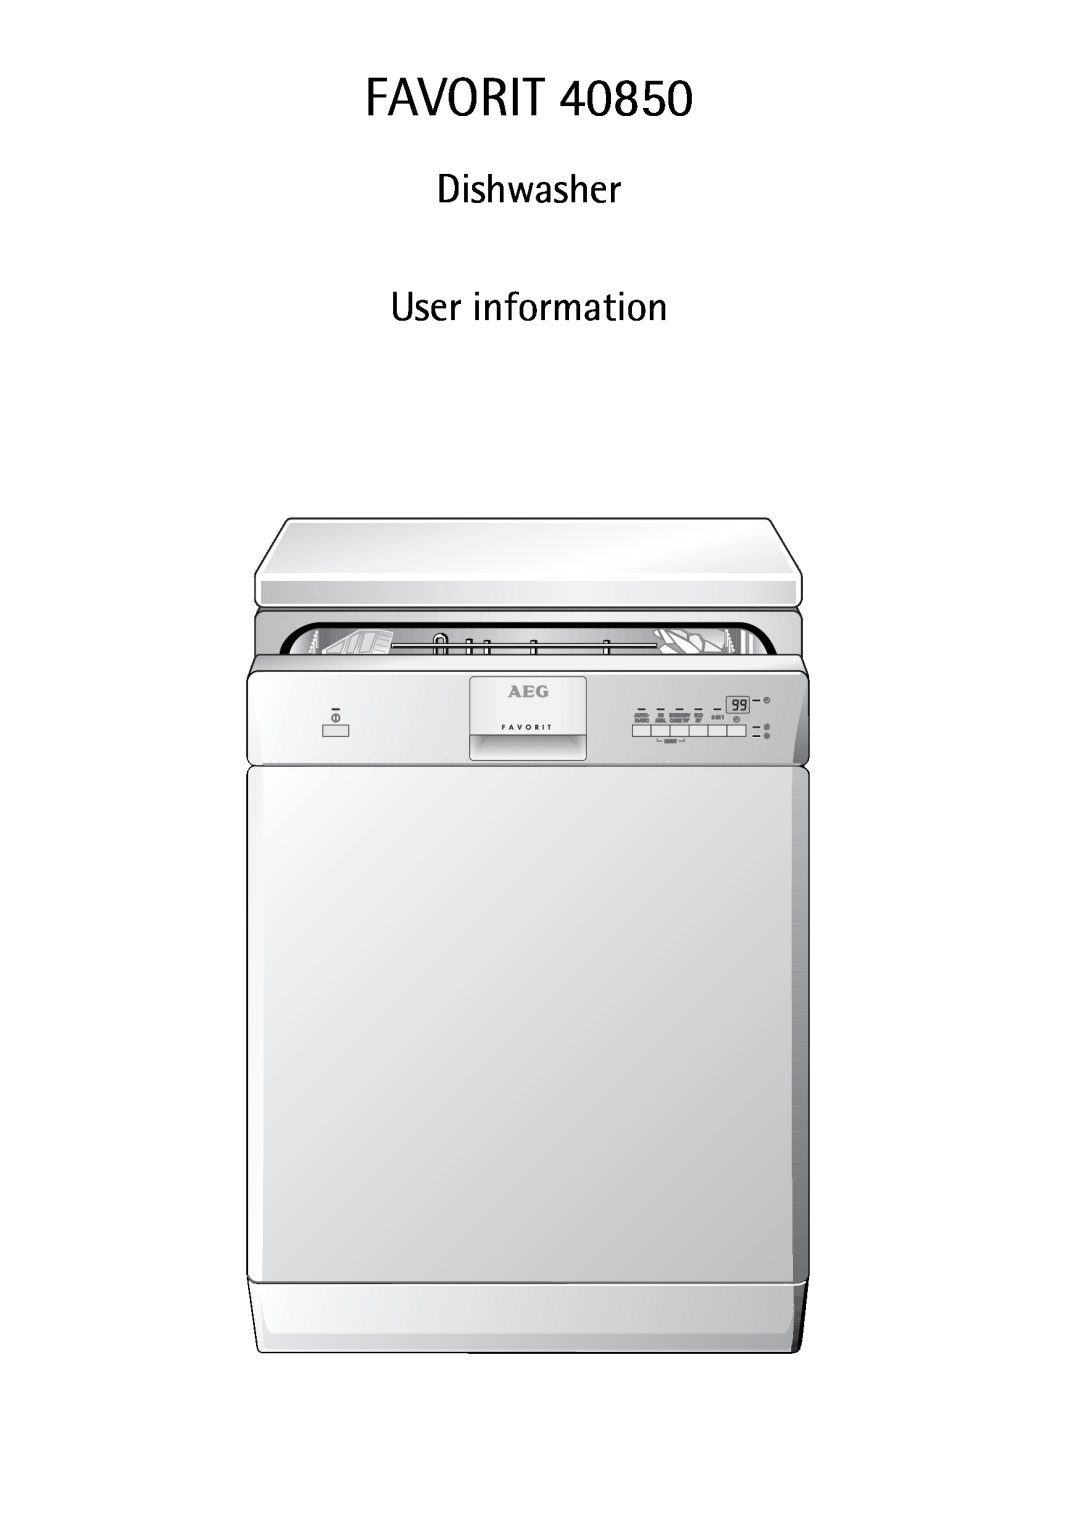 AEG 40850 manual Favorit, Dishwasher User information 